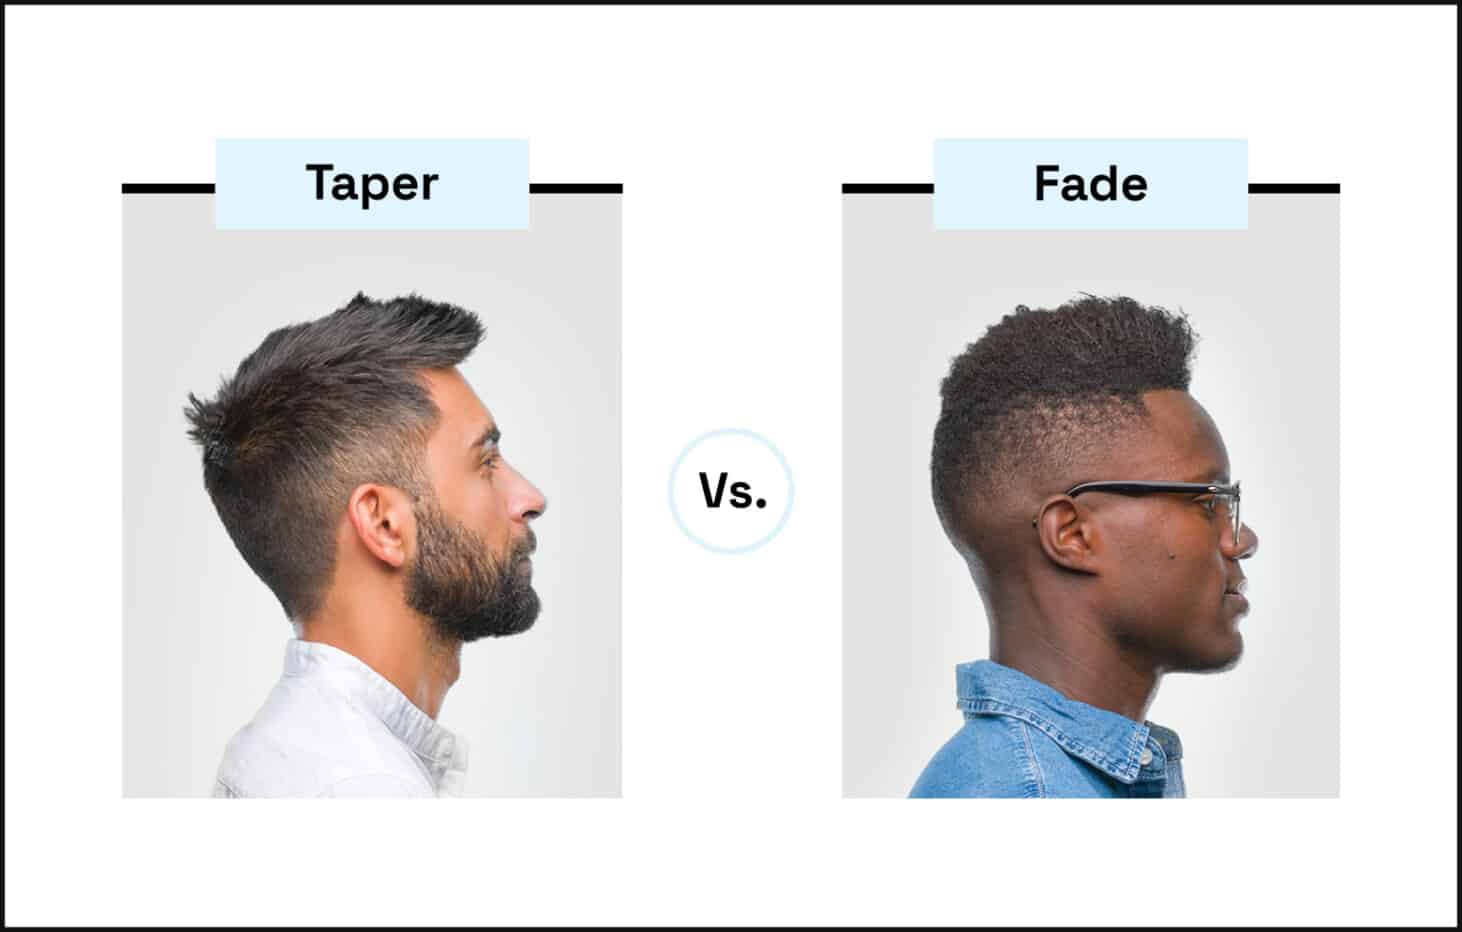 taper-vs-fade-1-731x466@2x